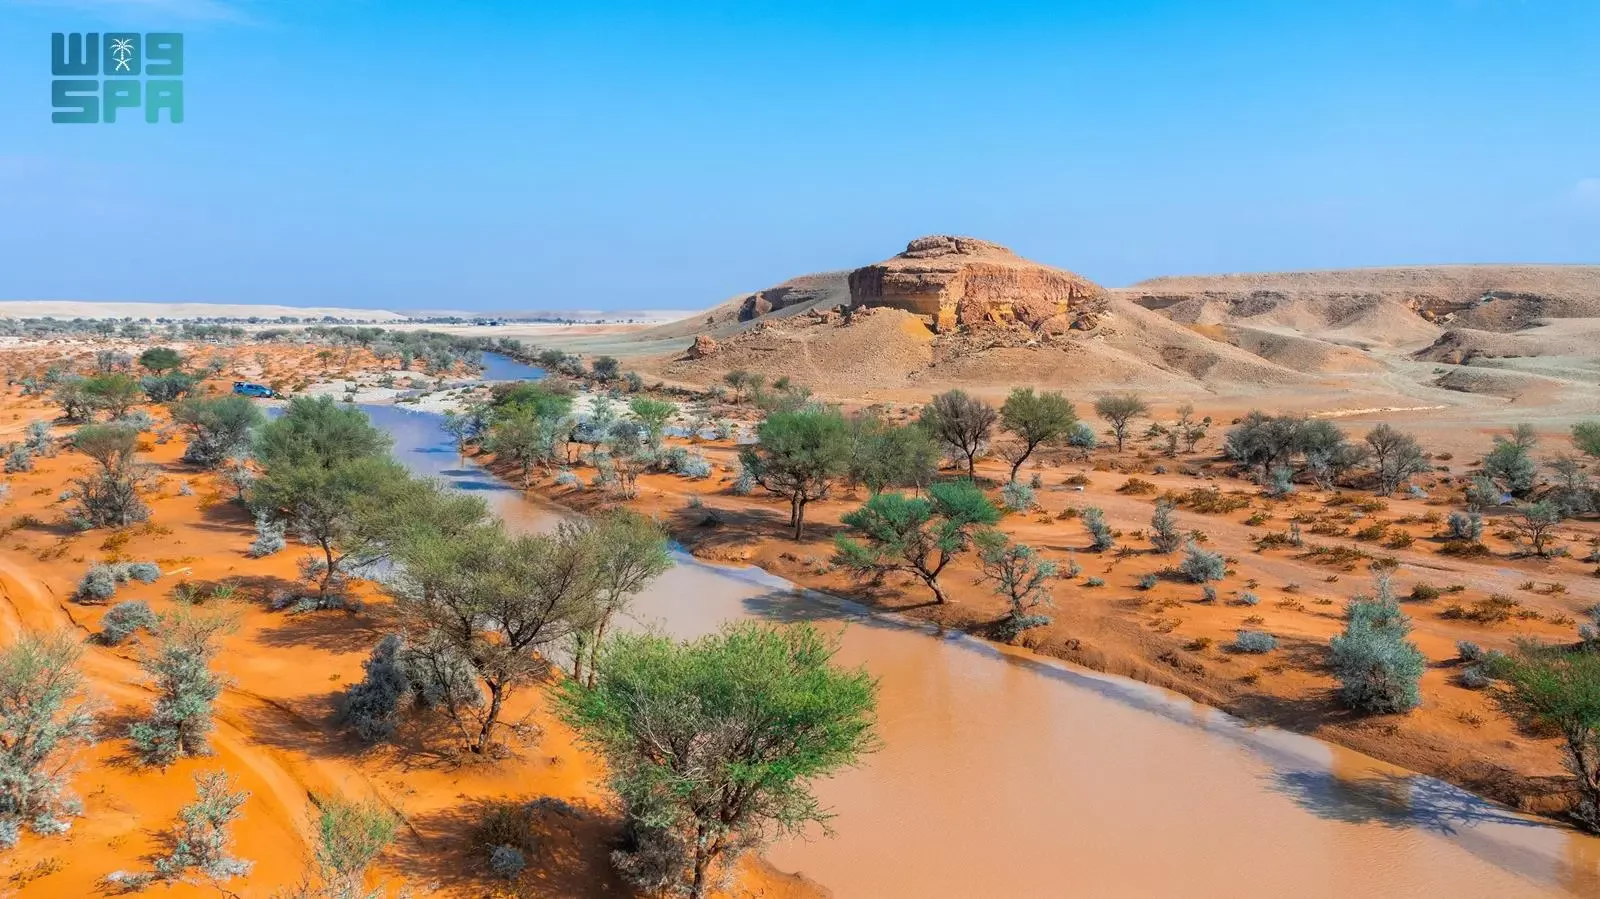 هيئة تطوير محمية الملك عبدالعزيز الملكية تُشارك في منتدى المحميات الطبيعية "حِمى"